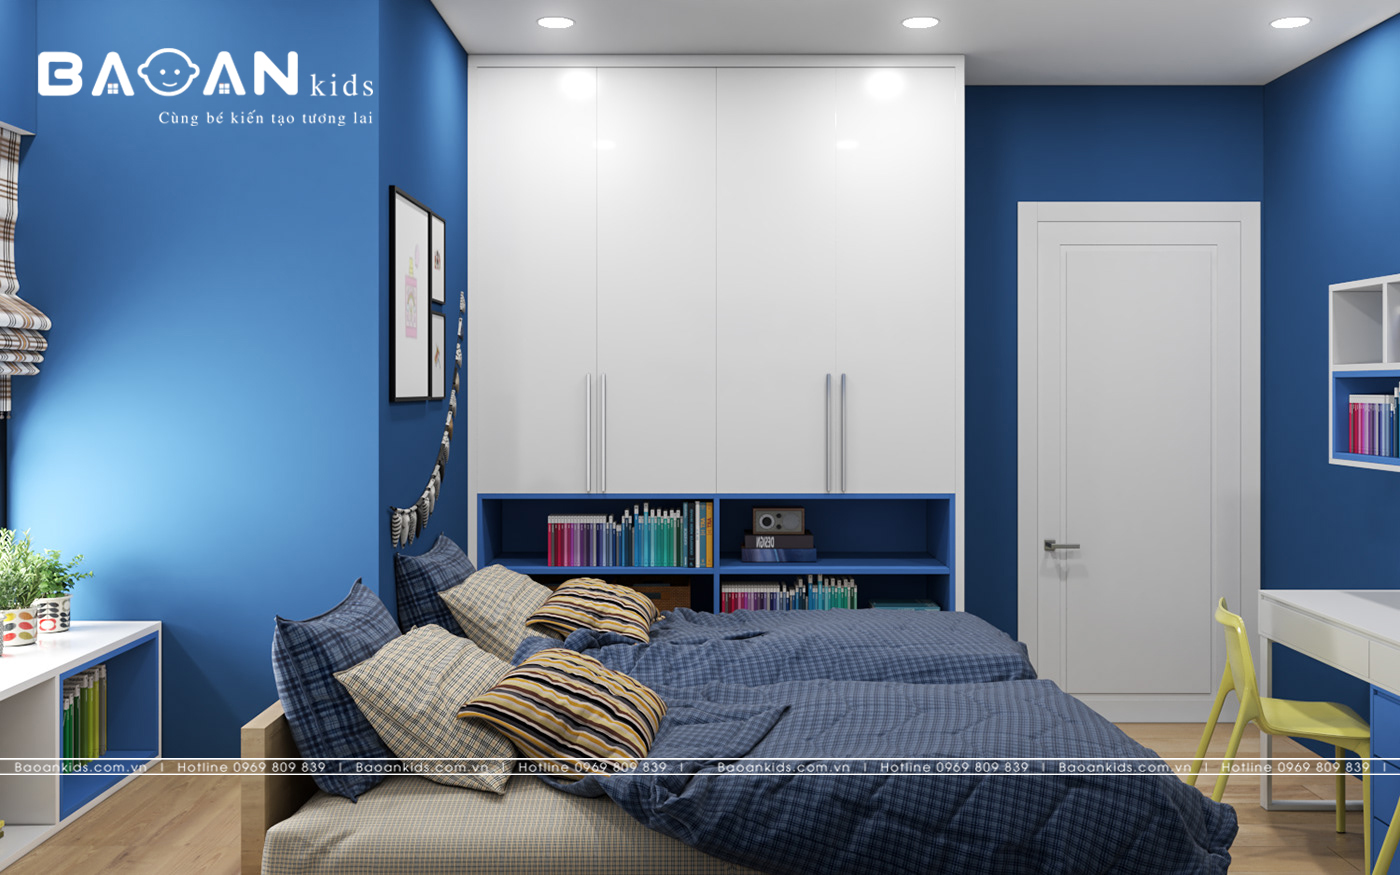 Ý tưởng thiết kế phòng ngủ màu xanh hấp dẫn và một số điều cần biết  Blog   SeSevn